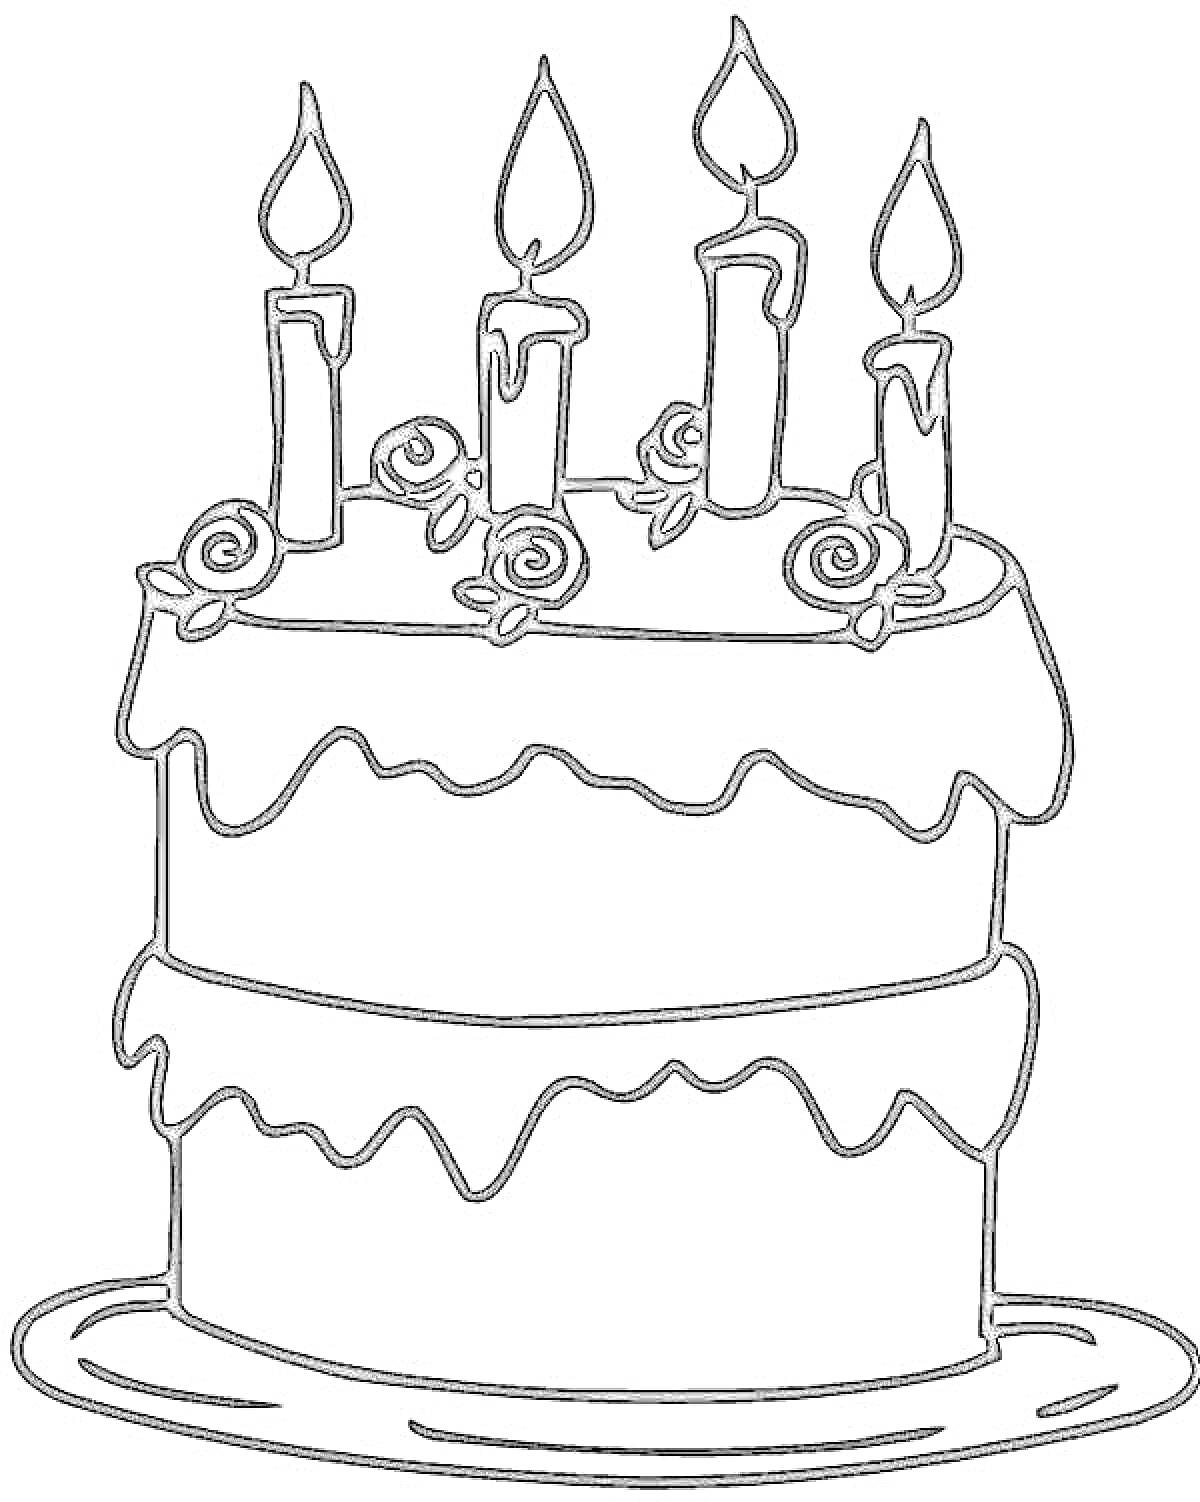 Двухъярусный торт с пятью свечами и розами на тарелке